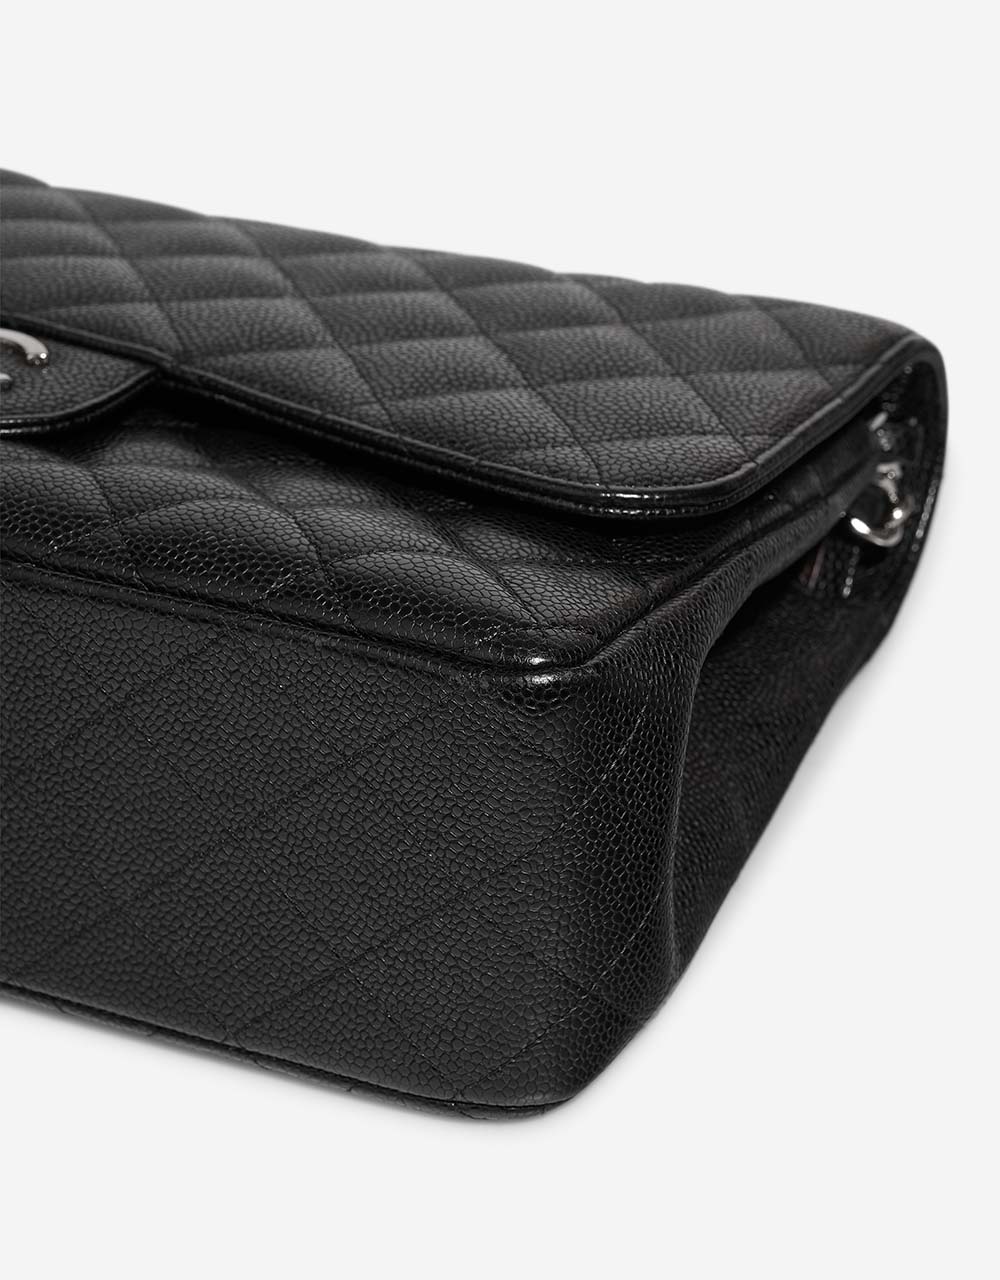 Chanel Timeless Jumbo Noir signes d'usure| Vendez votre sac de créateur sur Saclab.com